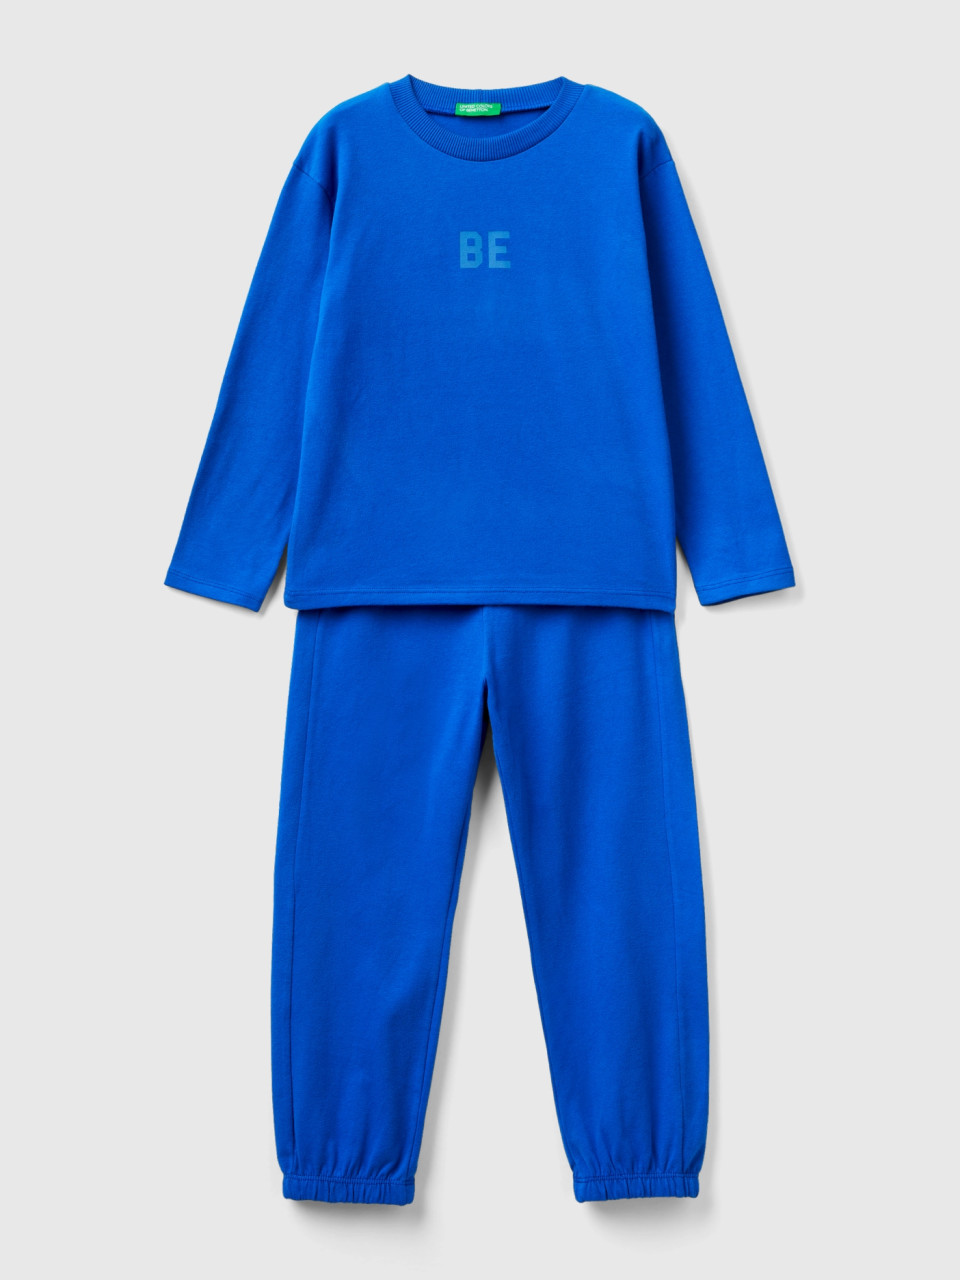 Benetton, Langer Pyjama Aus Warmem Jersey, Verkehrsblau, male